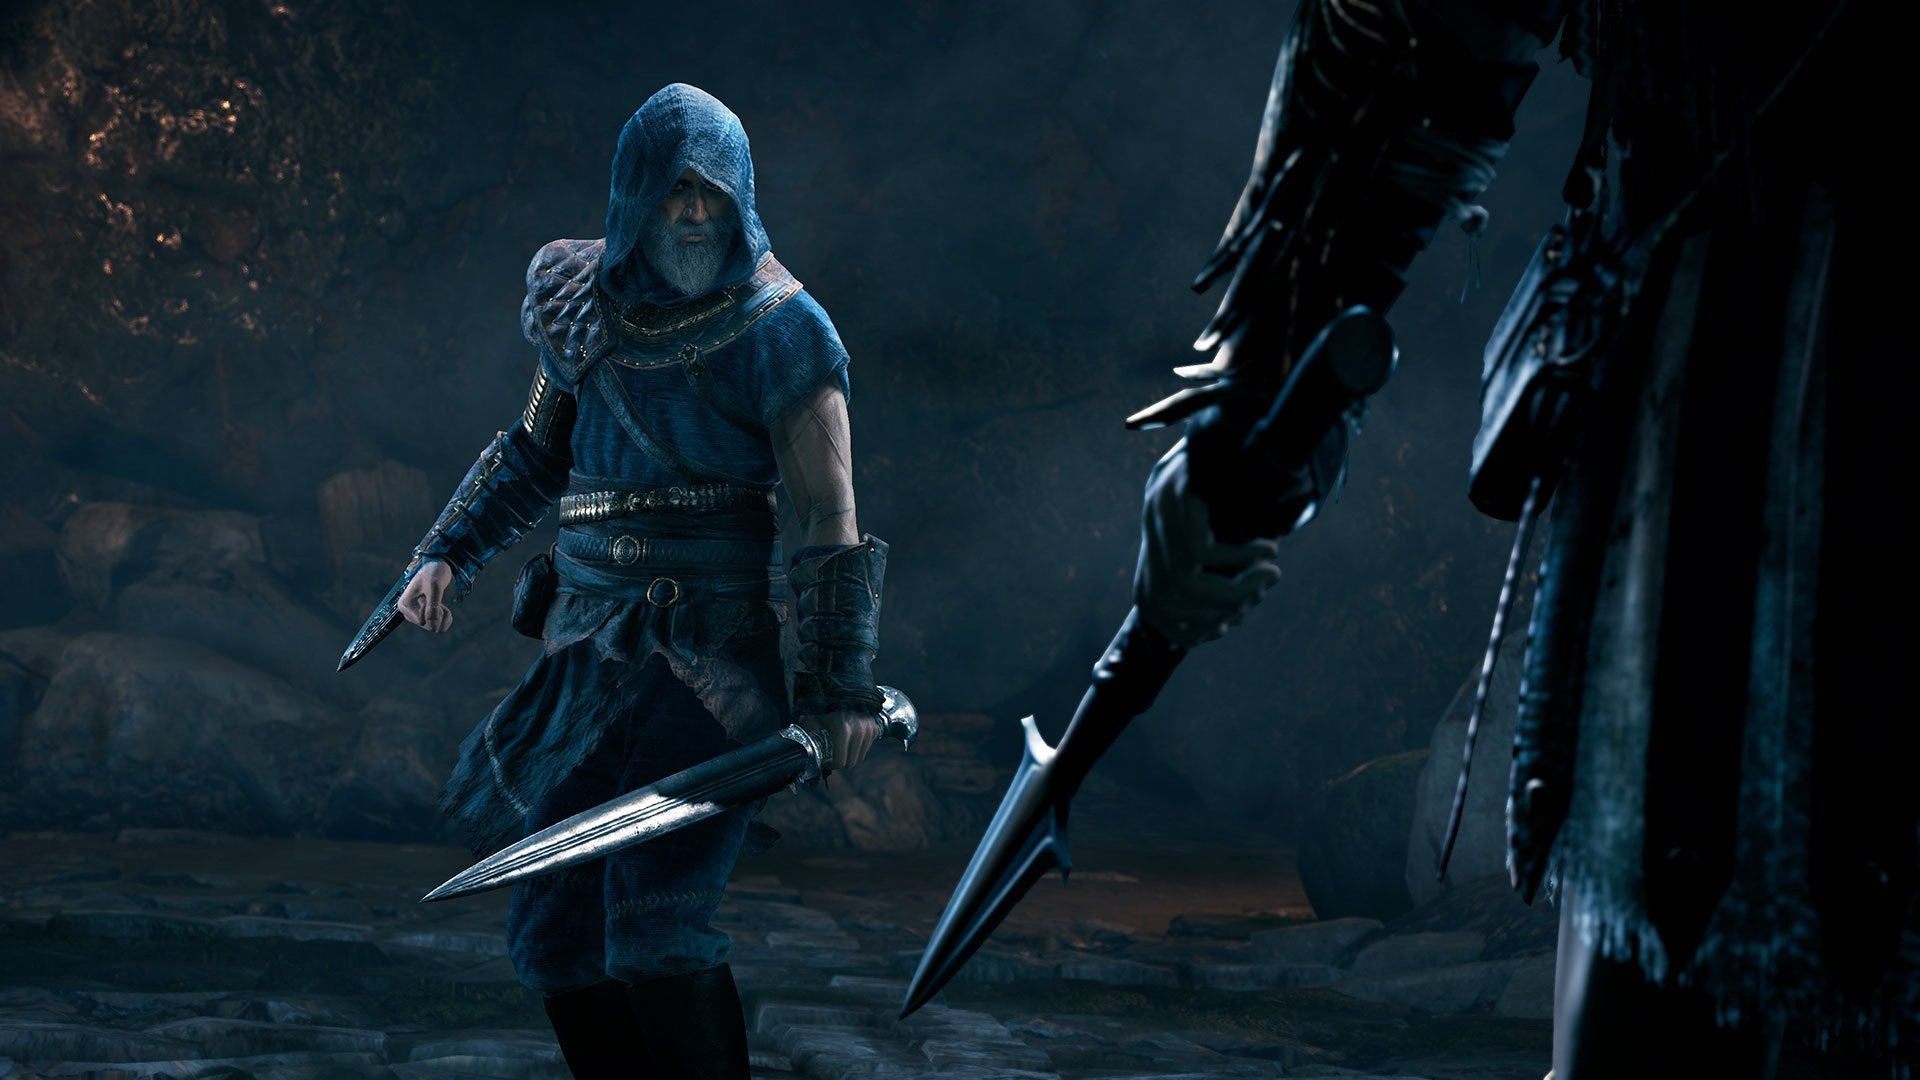 Voici le premier DLC pour Assassin’s Creed Odyssey